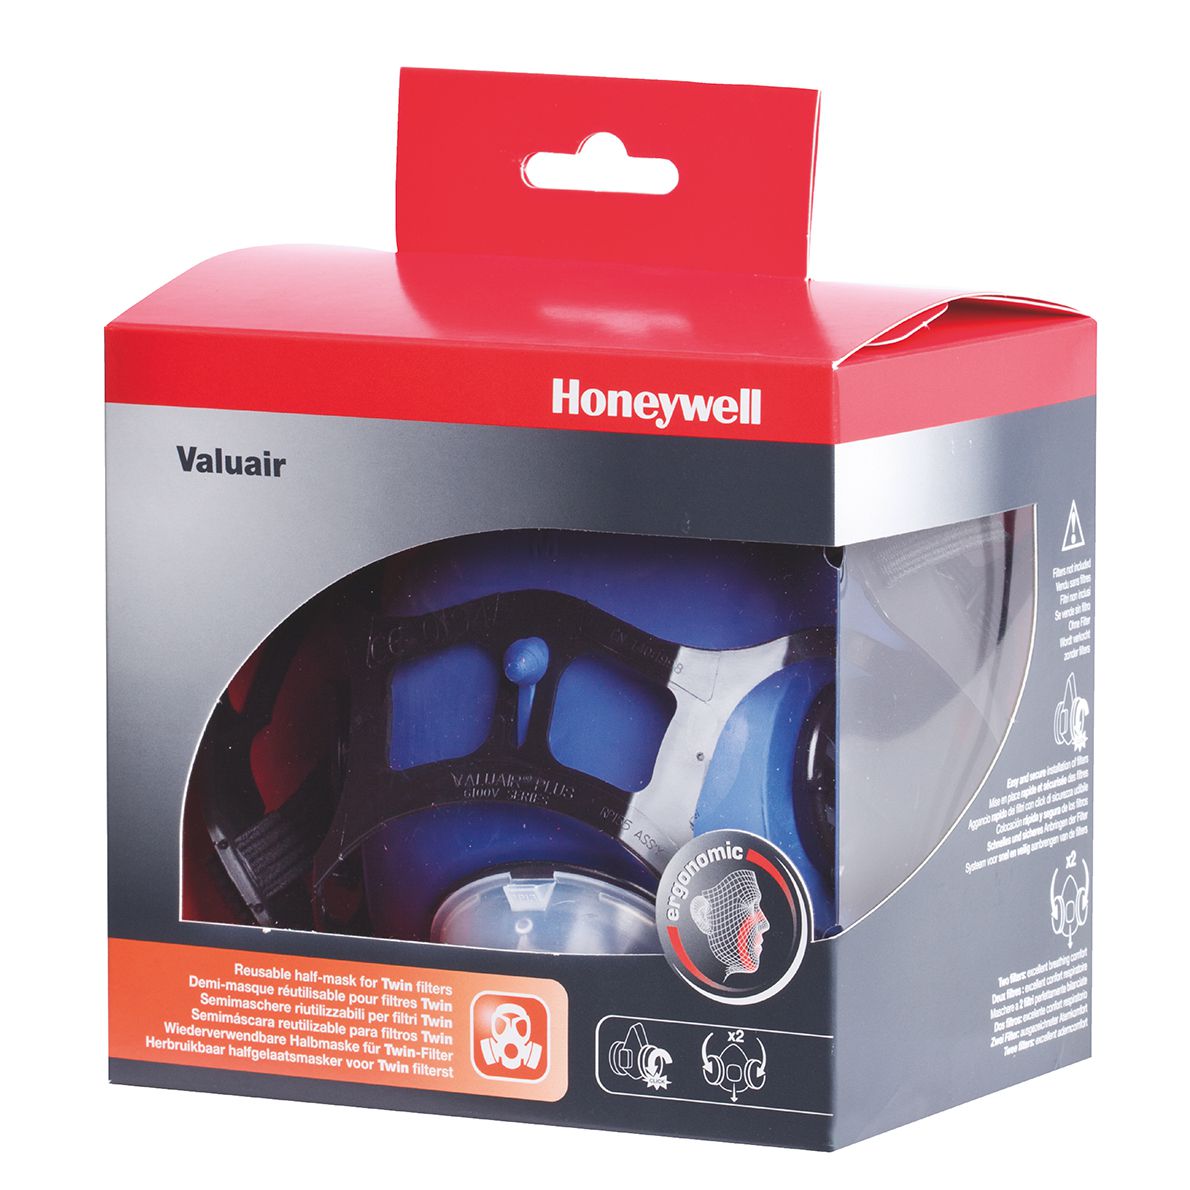 Honeywell Atemschutz Halbmaske ValuairPlus 6100 VM, Größe M, EN 140, Click-Fit-Filteranschluss